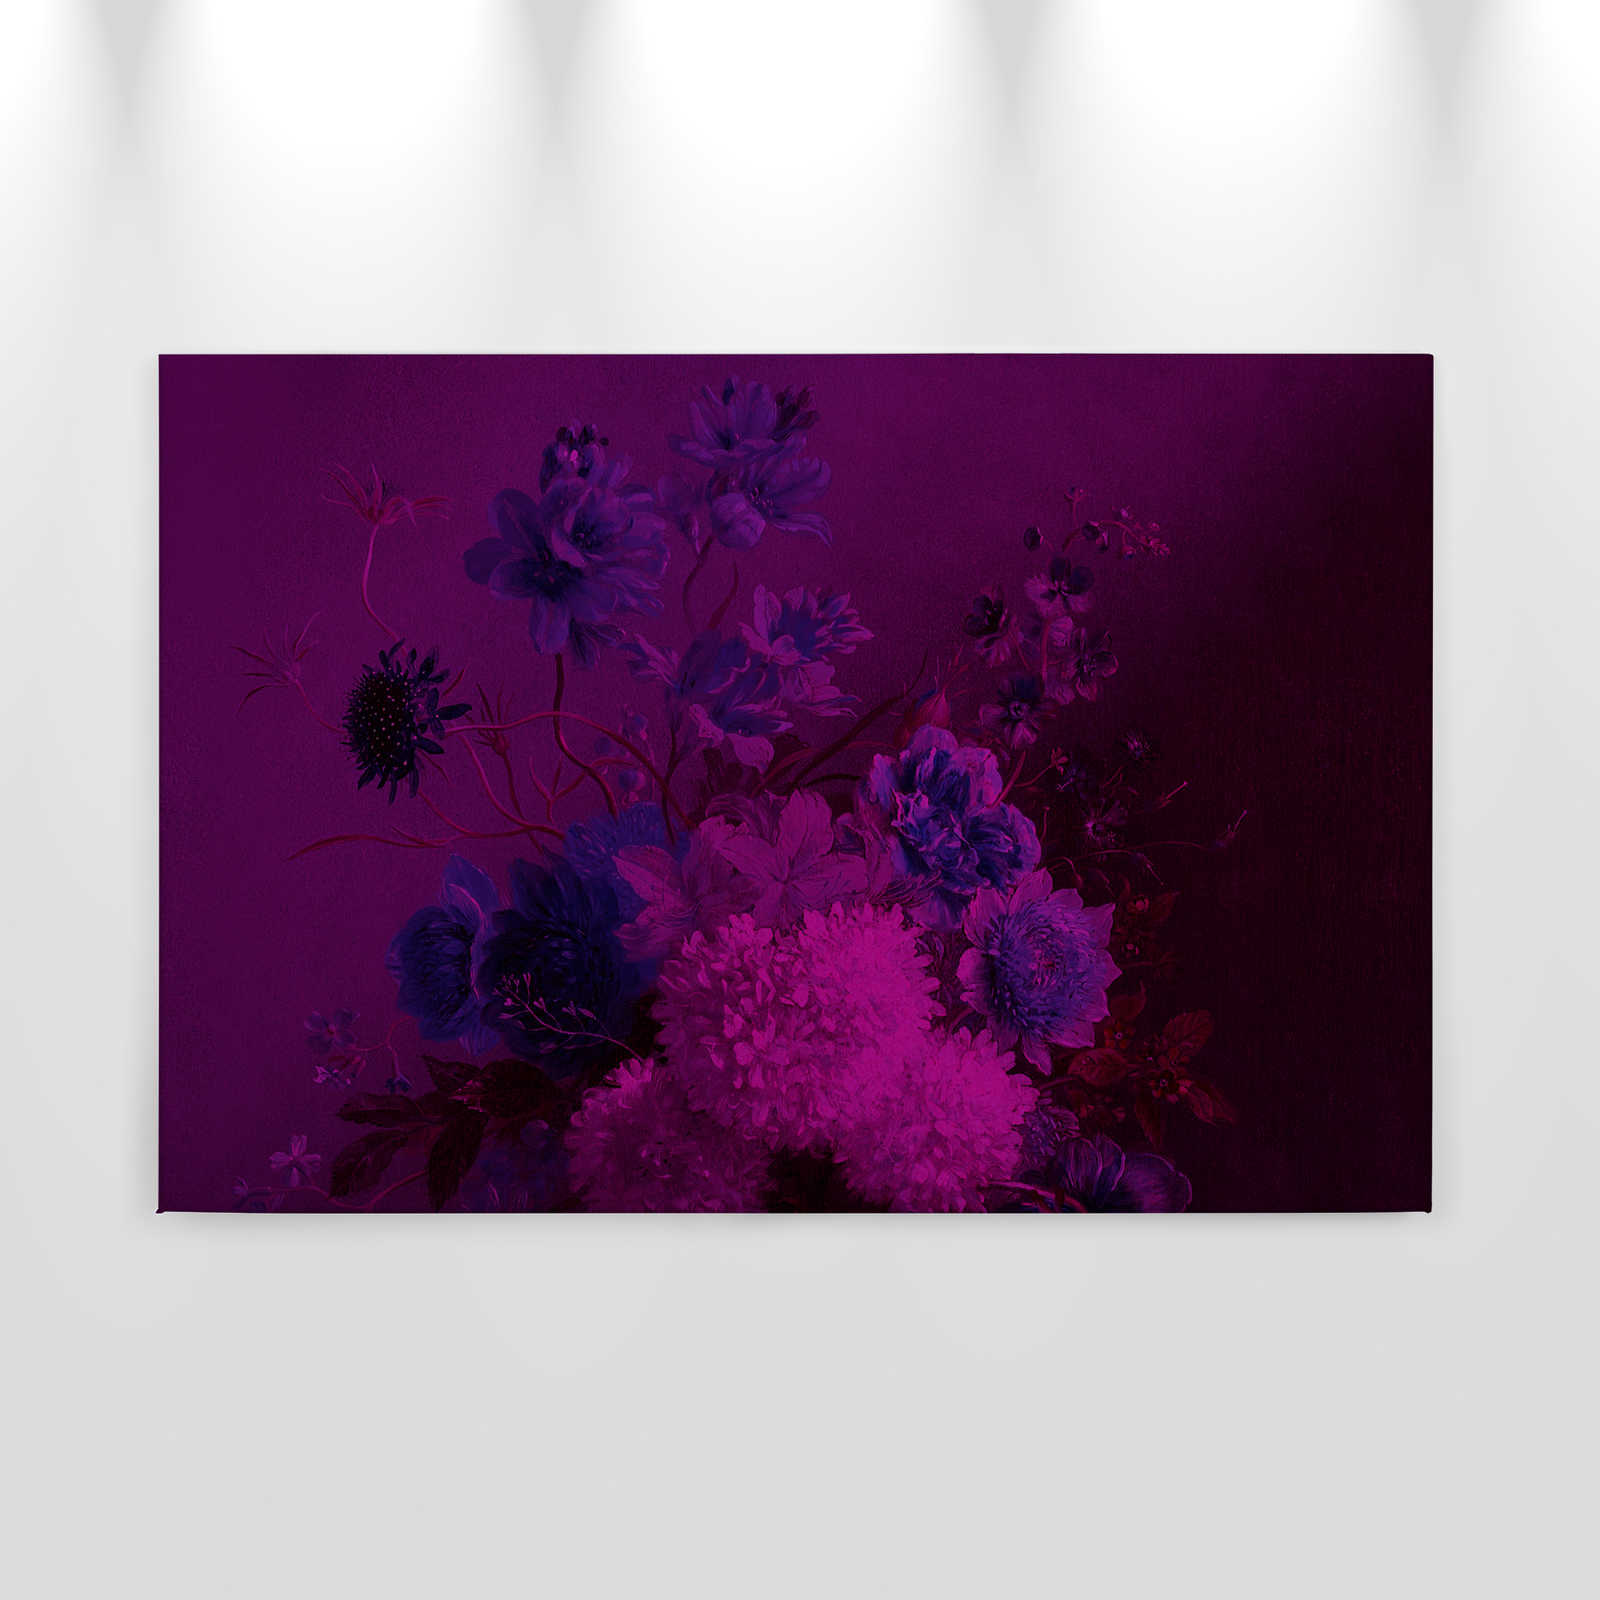             Neon Canvas Schilderij met bloemen Stilleven | boeket Vibran 3 - 0.90 m x 0.60 m
        